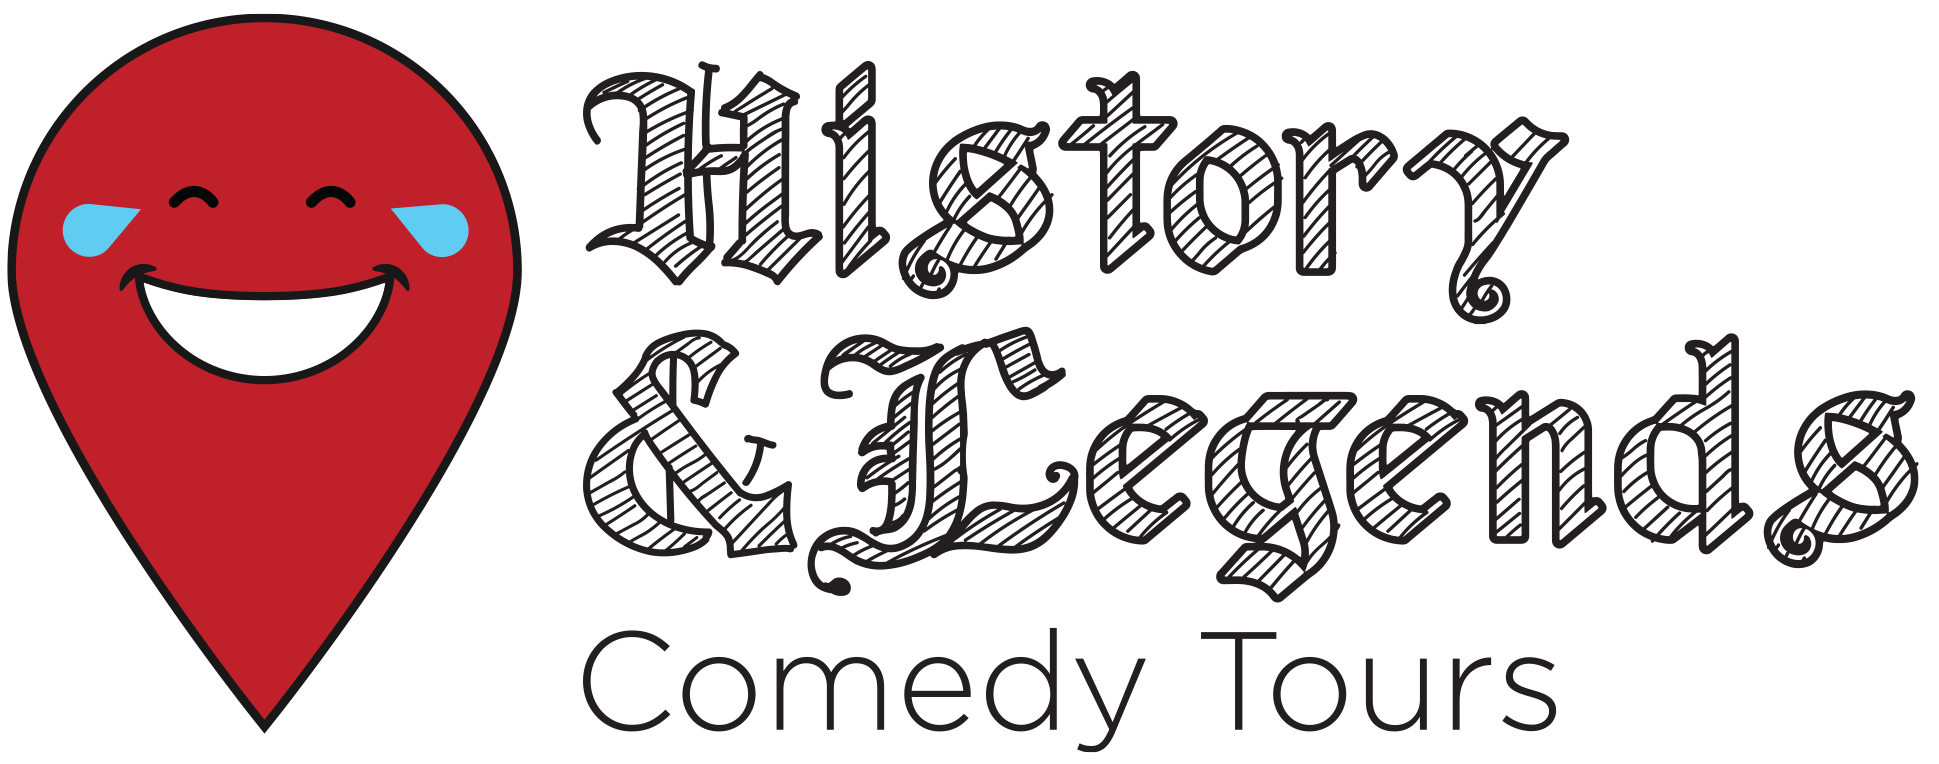 H&L Comedy Tours Logo 3